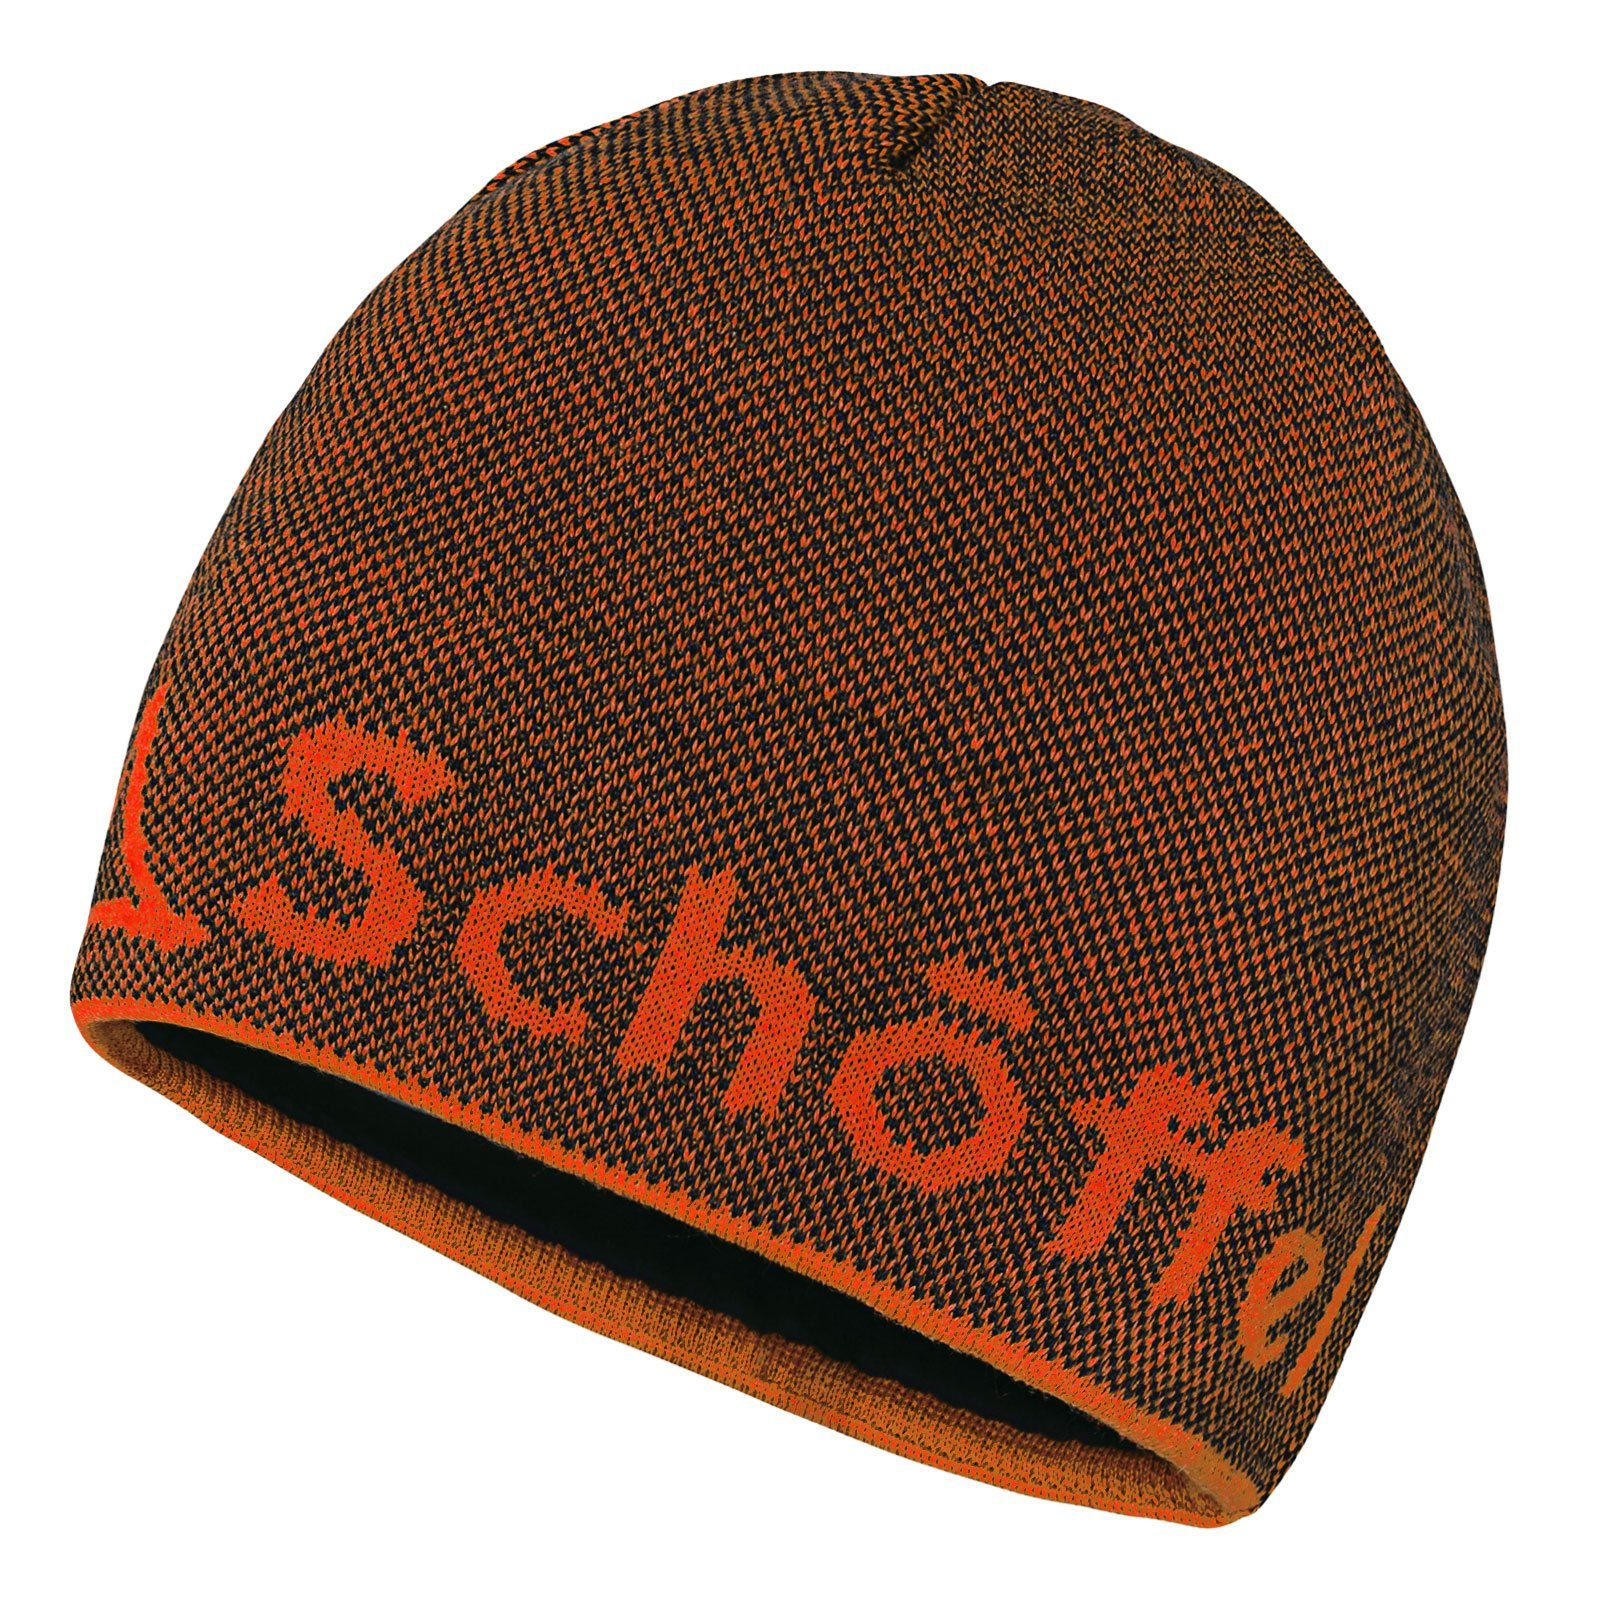 Schoeffel Schöffel Strickmütze Knitted Hat Klinovec mit eingestricktem Schöffel-Logo 0882 navy blazer